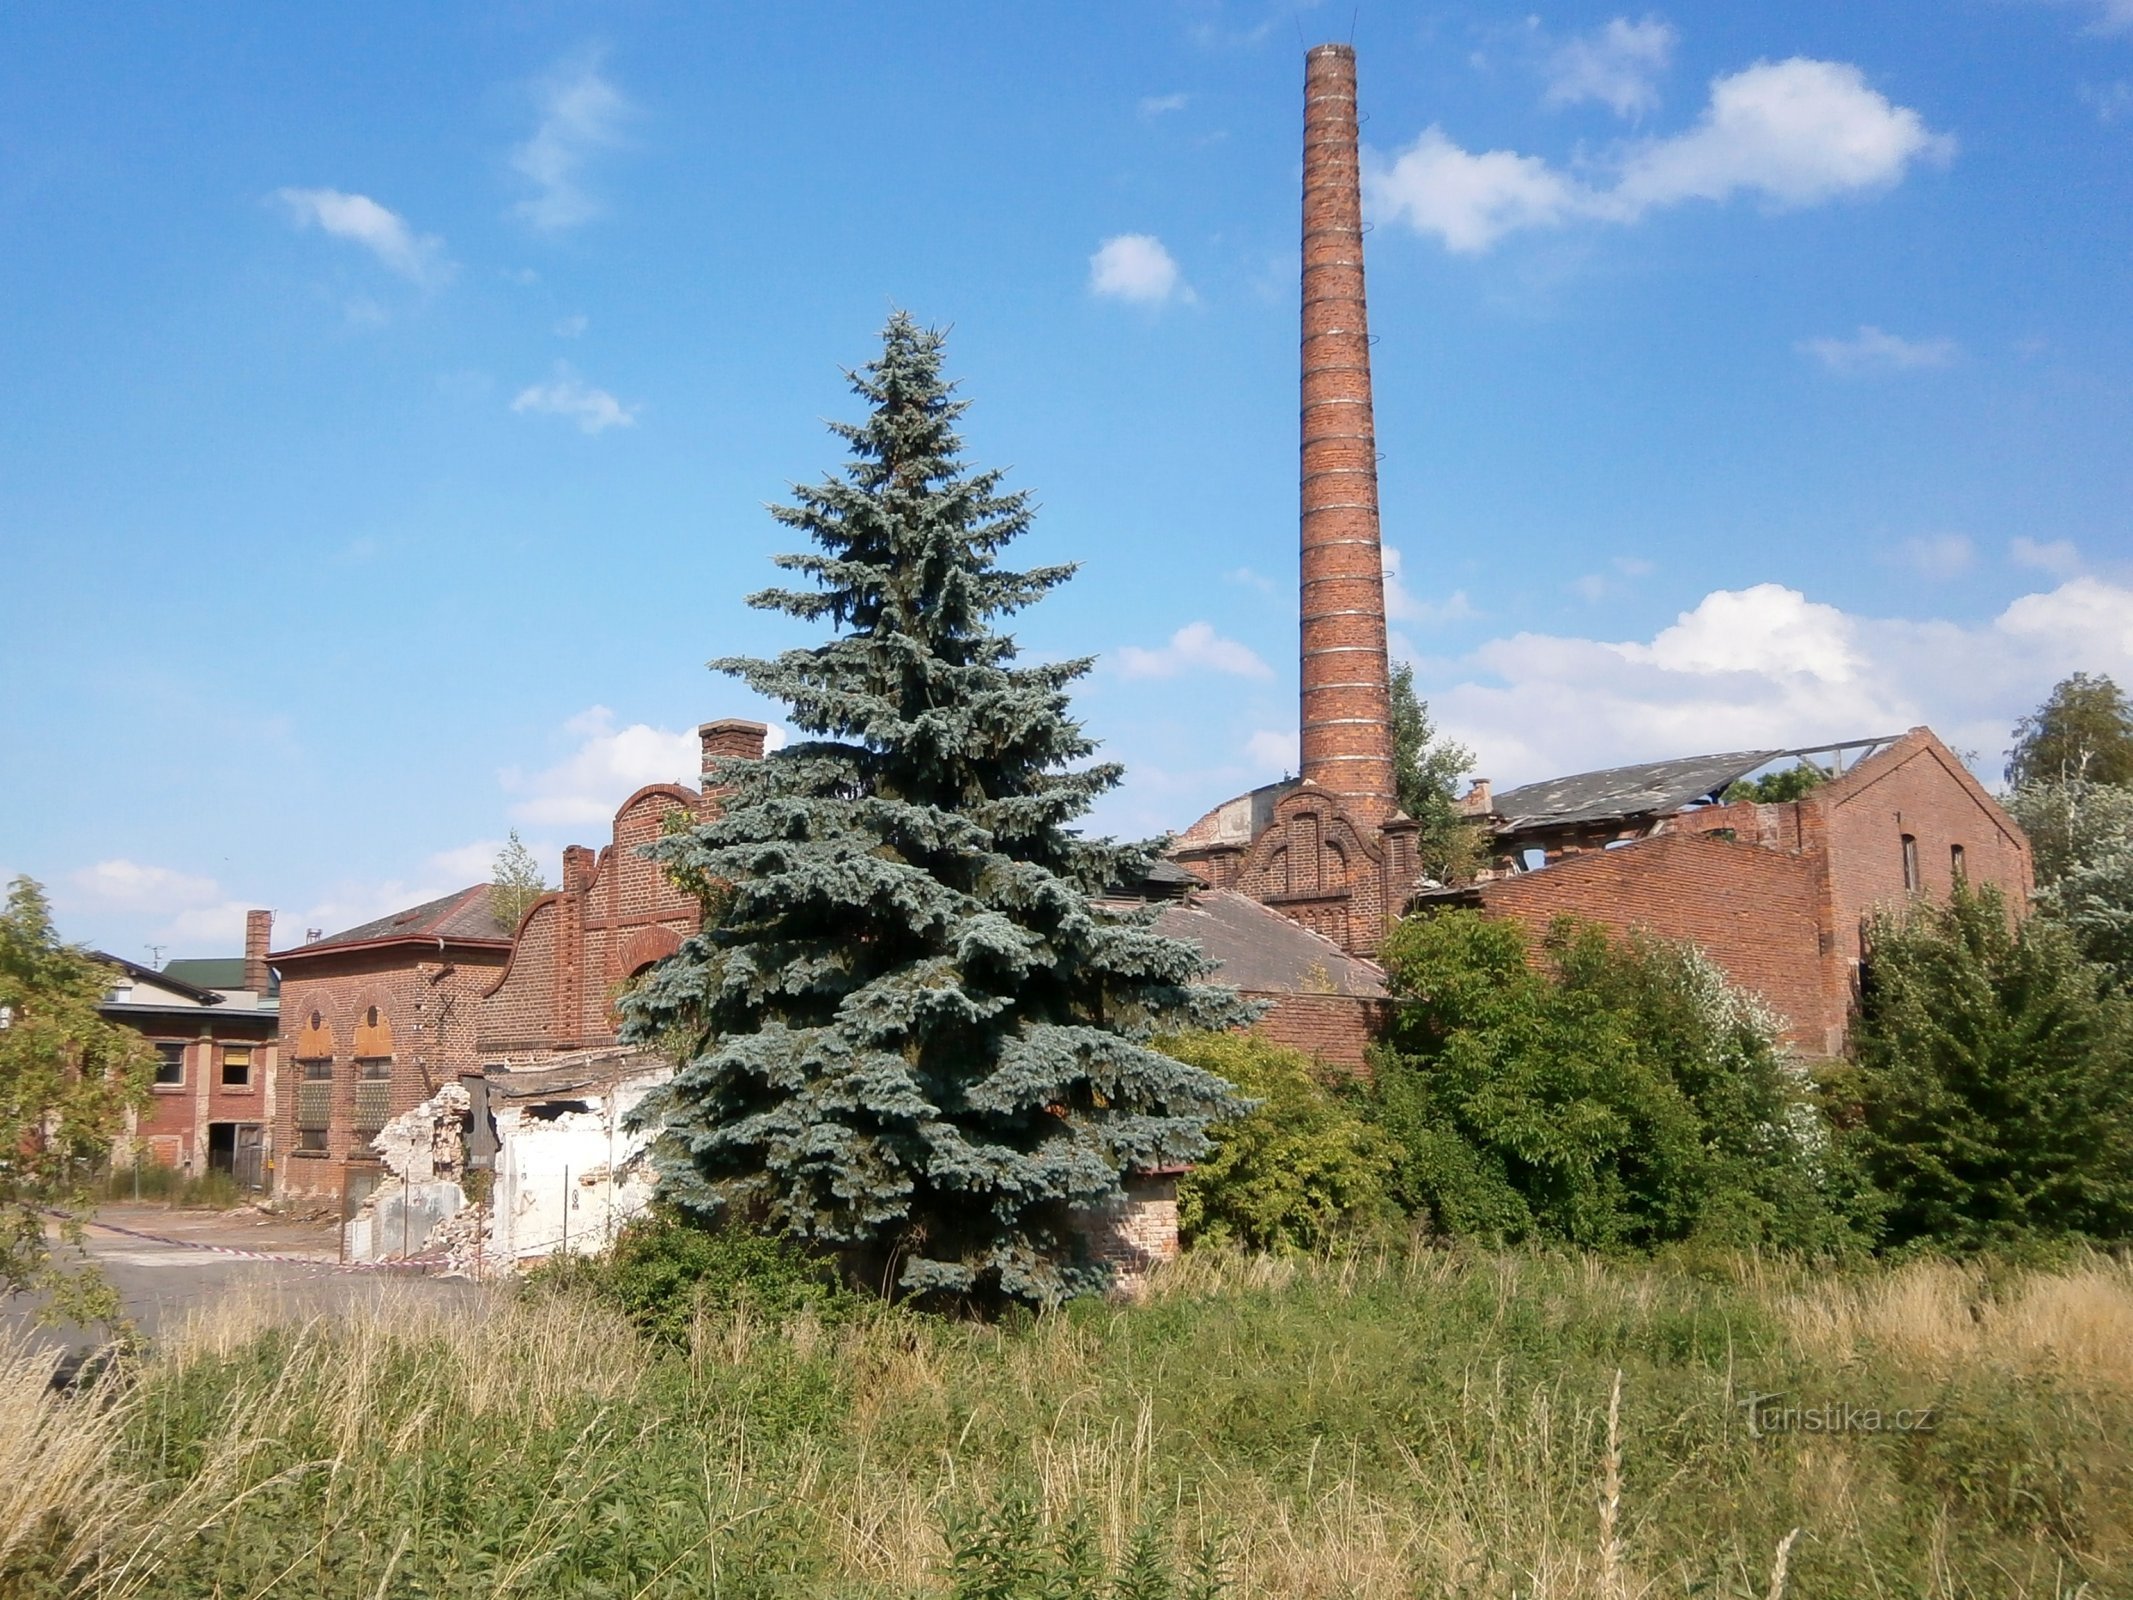 Кожевенный завод в Кукленах до сноса (Градец Кралове, 19.6.2014)